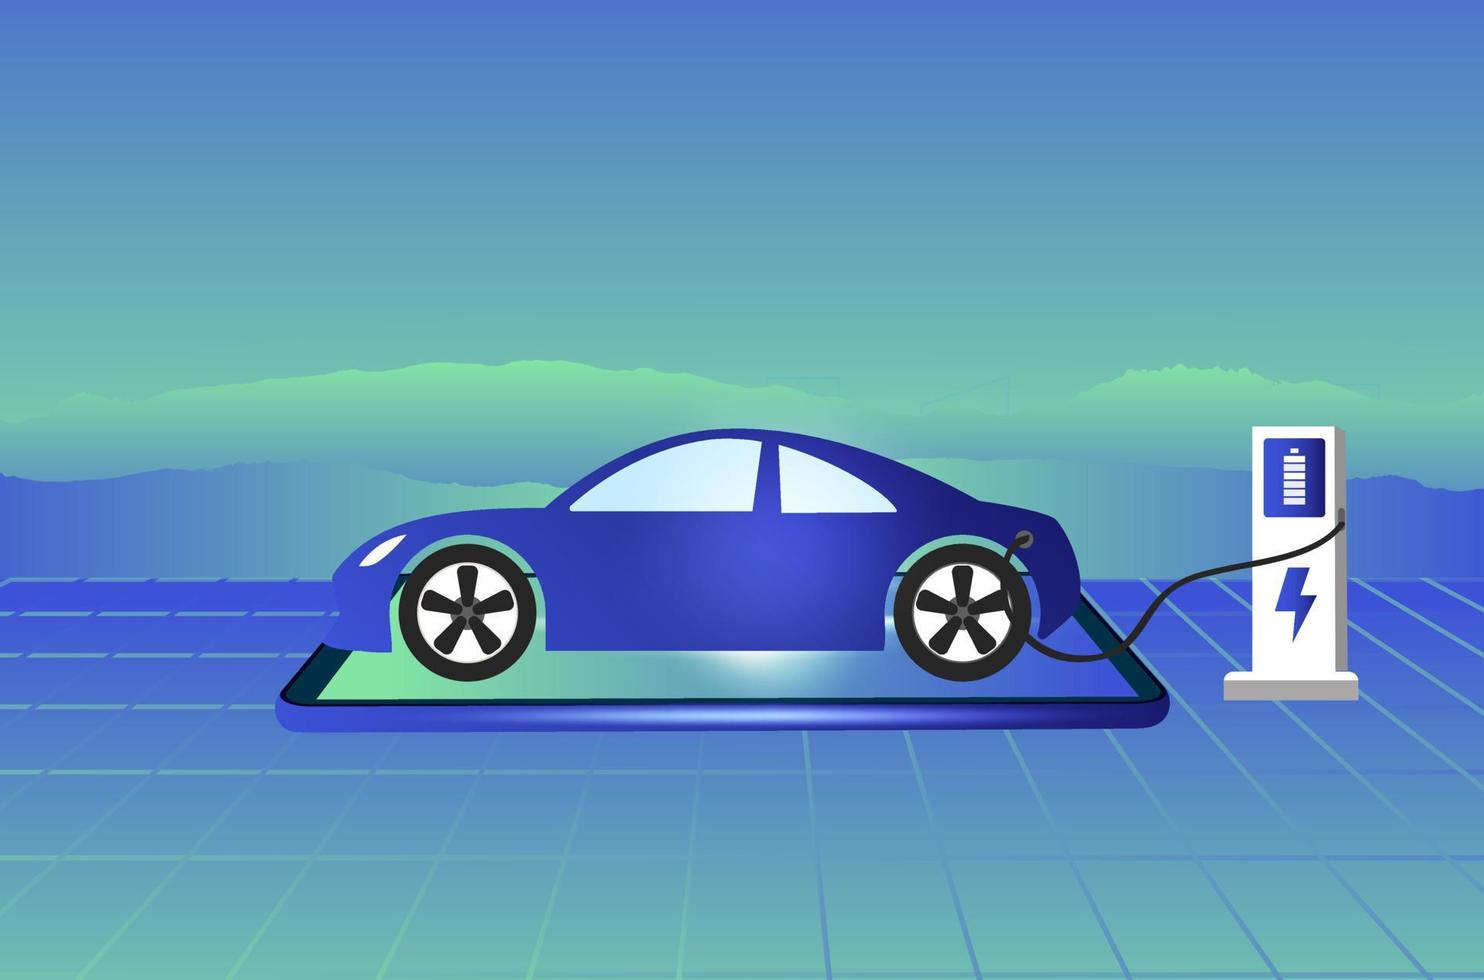 elektroauto, ev-auto, aufladen der batterie an der elektrischen ladestation. nachhaltige grüne energie für die ökologie umwelt. futuristische Transporttechnologie. vektor